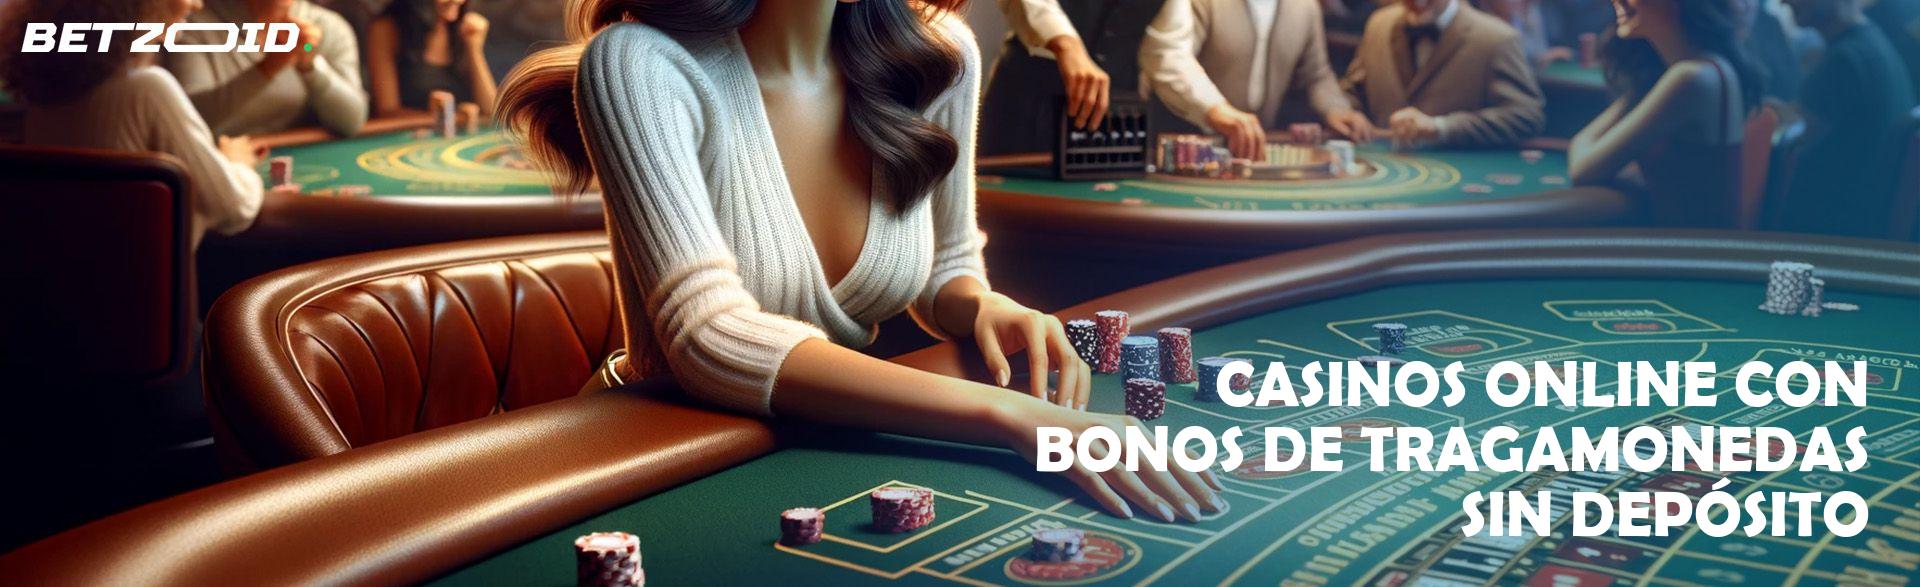 Casinos Online con Bonos de Tragamonedas sin Depósito.